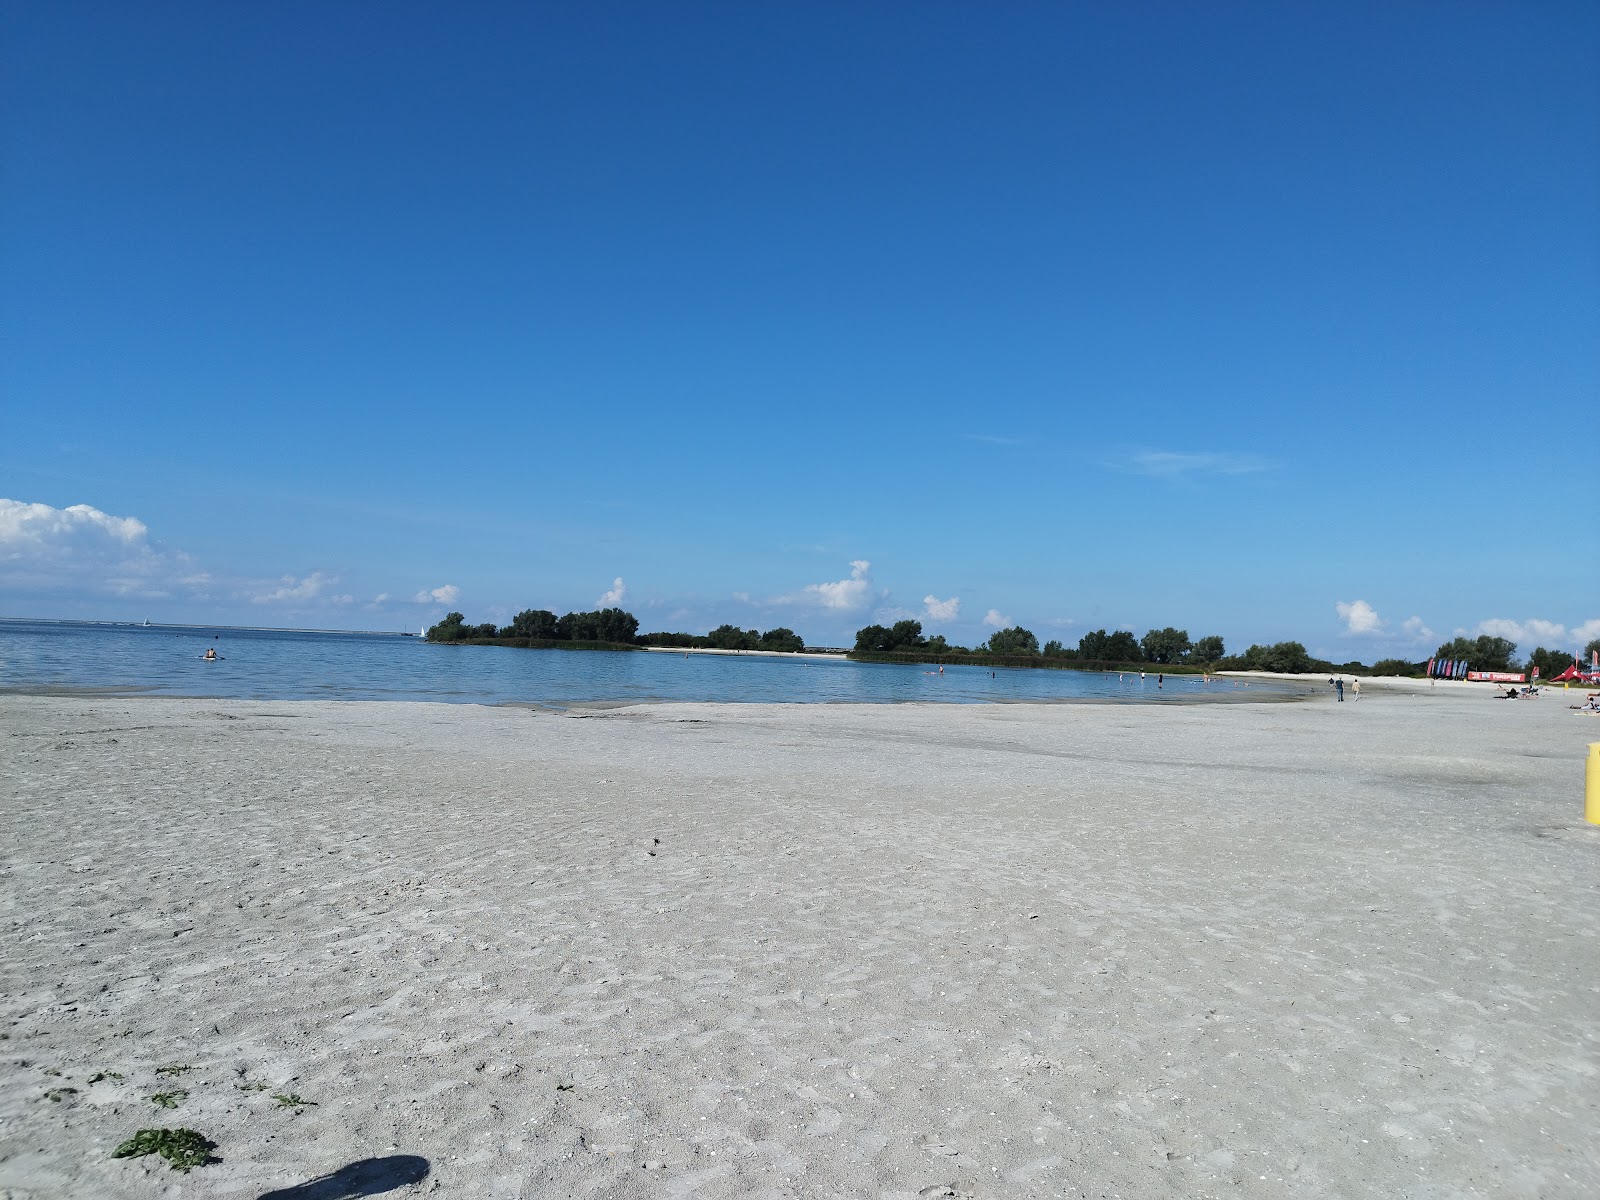 Fotografie cu Makkum strand - locul popular printre cunoscătorii de relaxare